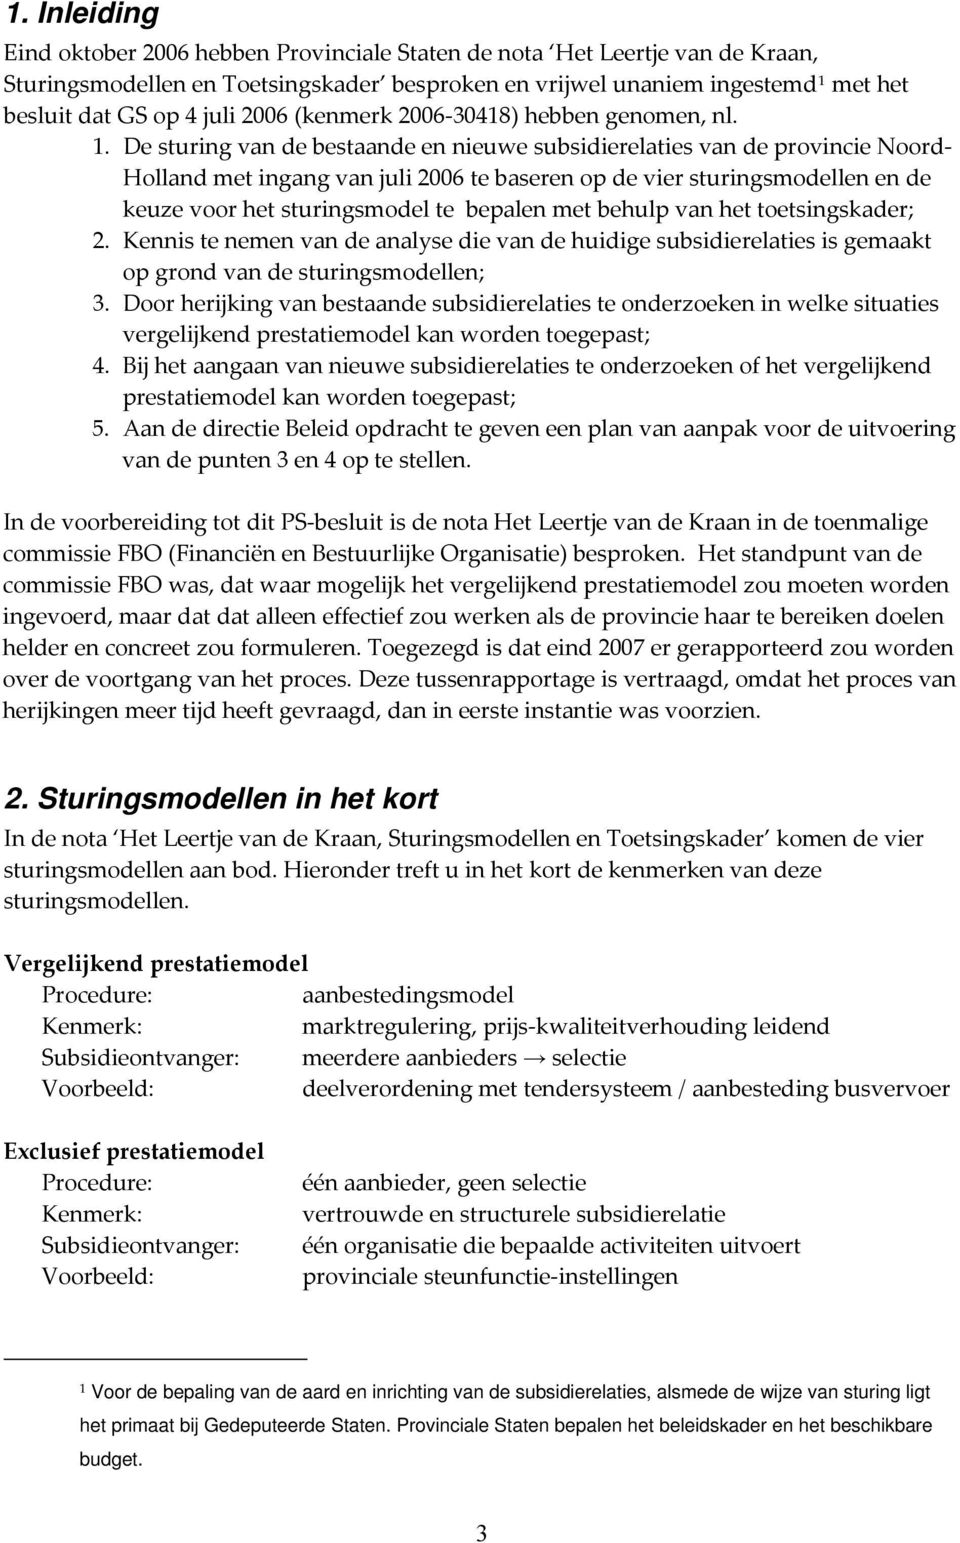 De sturing van de bestaande en nieuwe subsidierelaties van de provincie Noord Holland met ingang van juli 2006 te baseren op de vier sturingsmodellen en de keuze voor het sturingsmodel te bepalen met